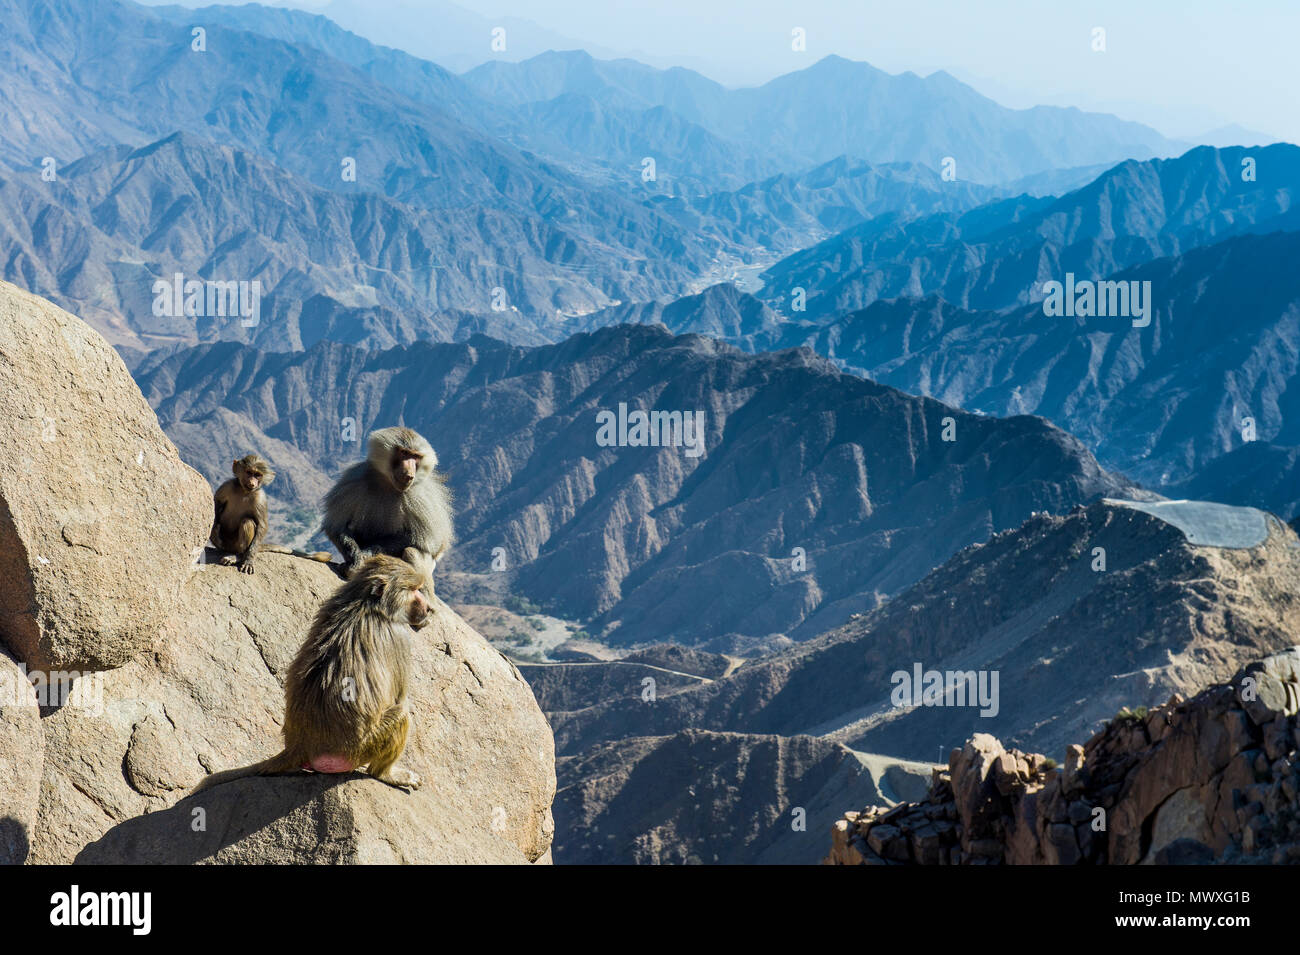 Les babouins sur falaise de montagne, Abha, Arabie saoudite, Moyen Orient Banque D'Images